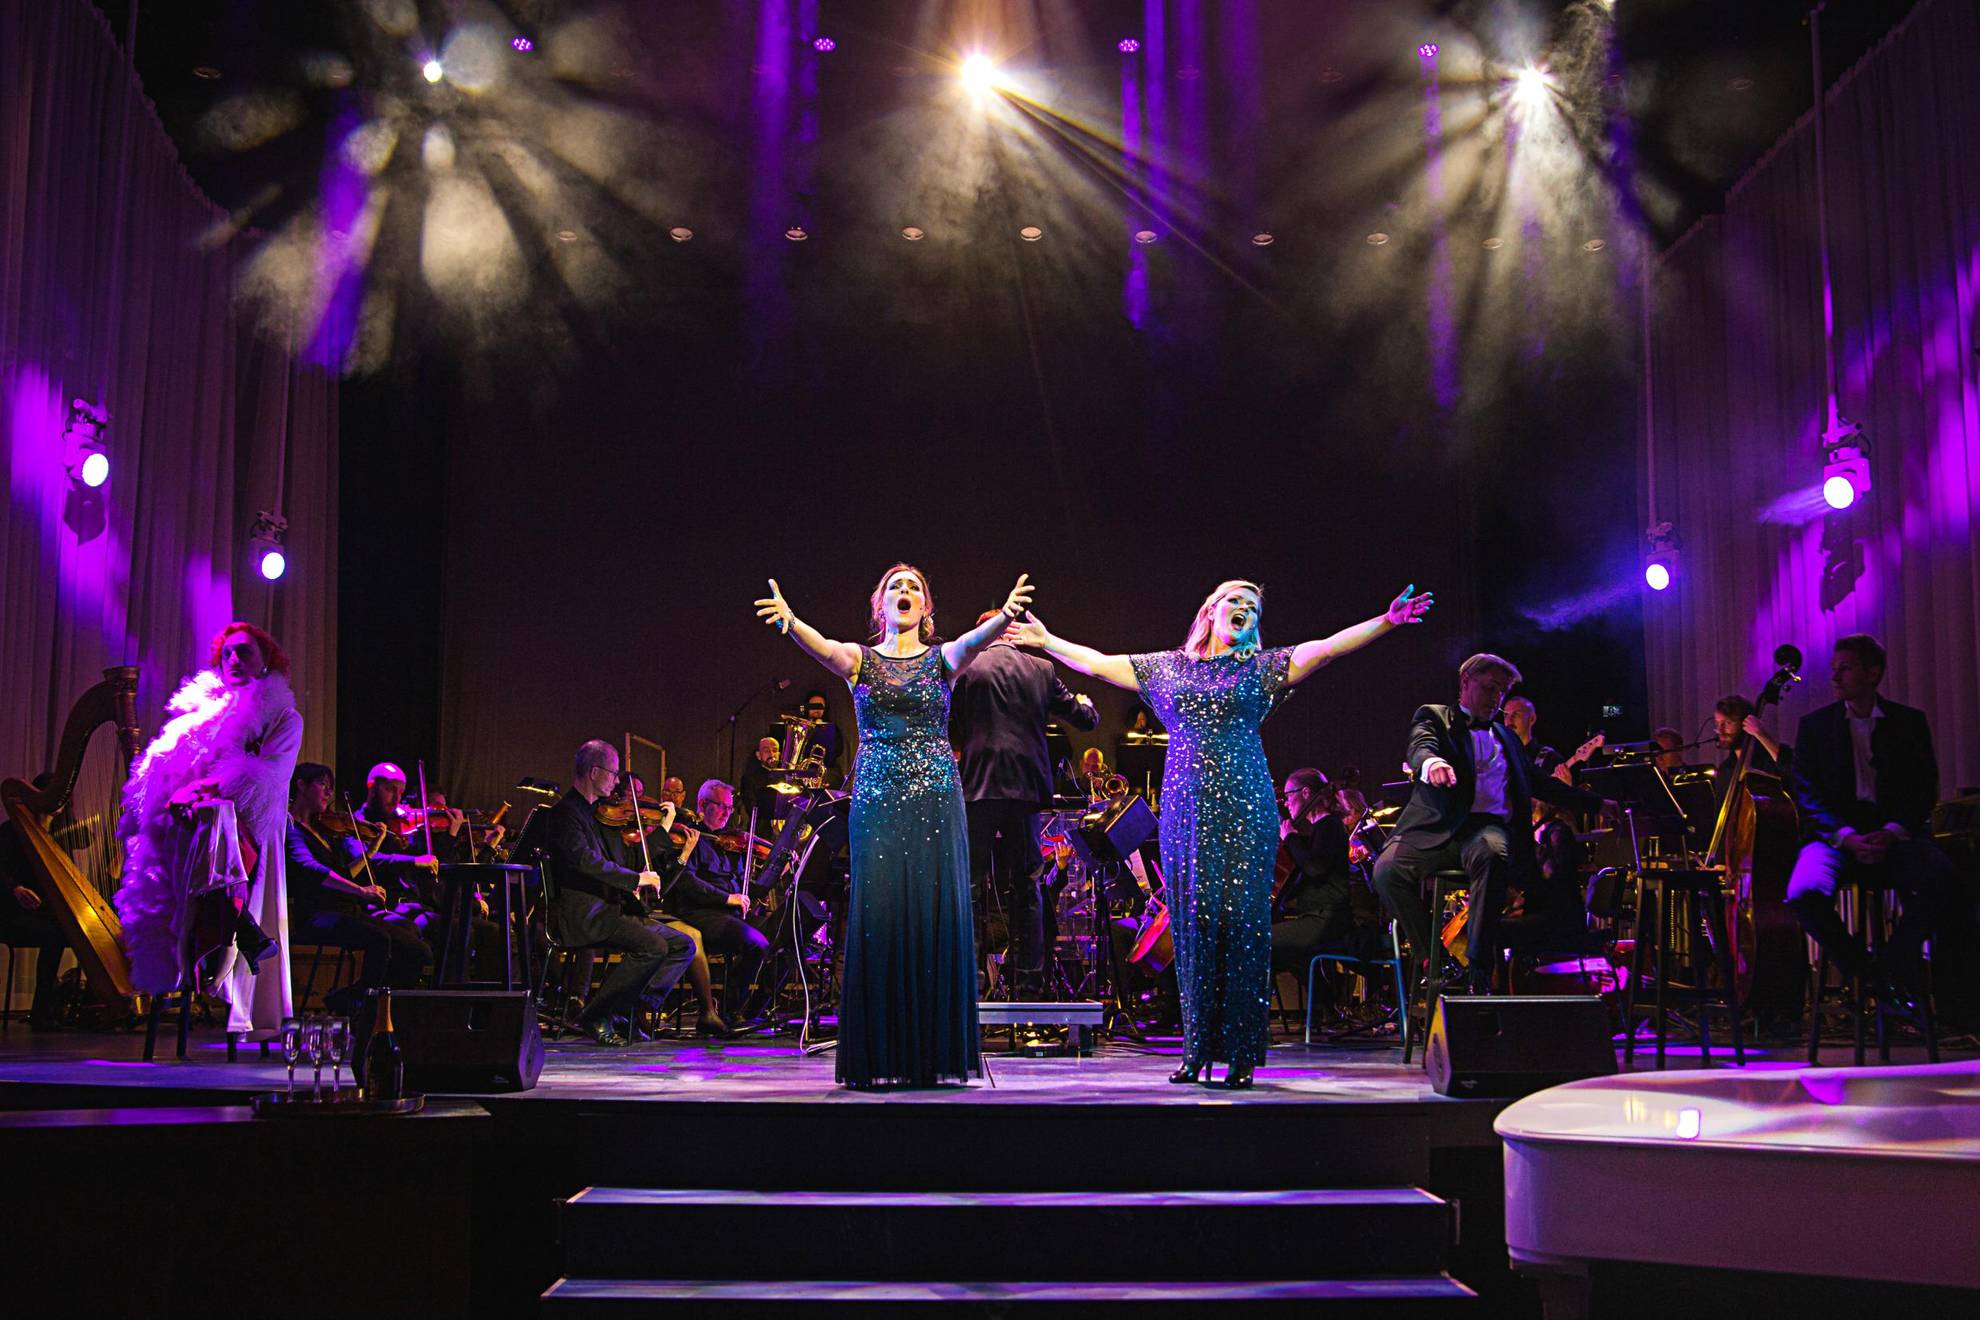 Twee vrouwen in blauwe glitterjurken zingen op een podium tijdens een optreden. Achter hen staat een orkest.